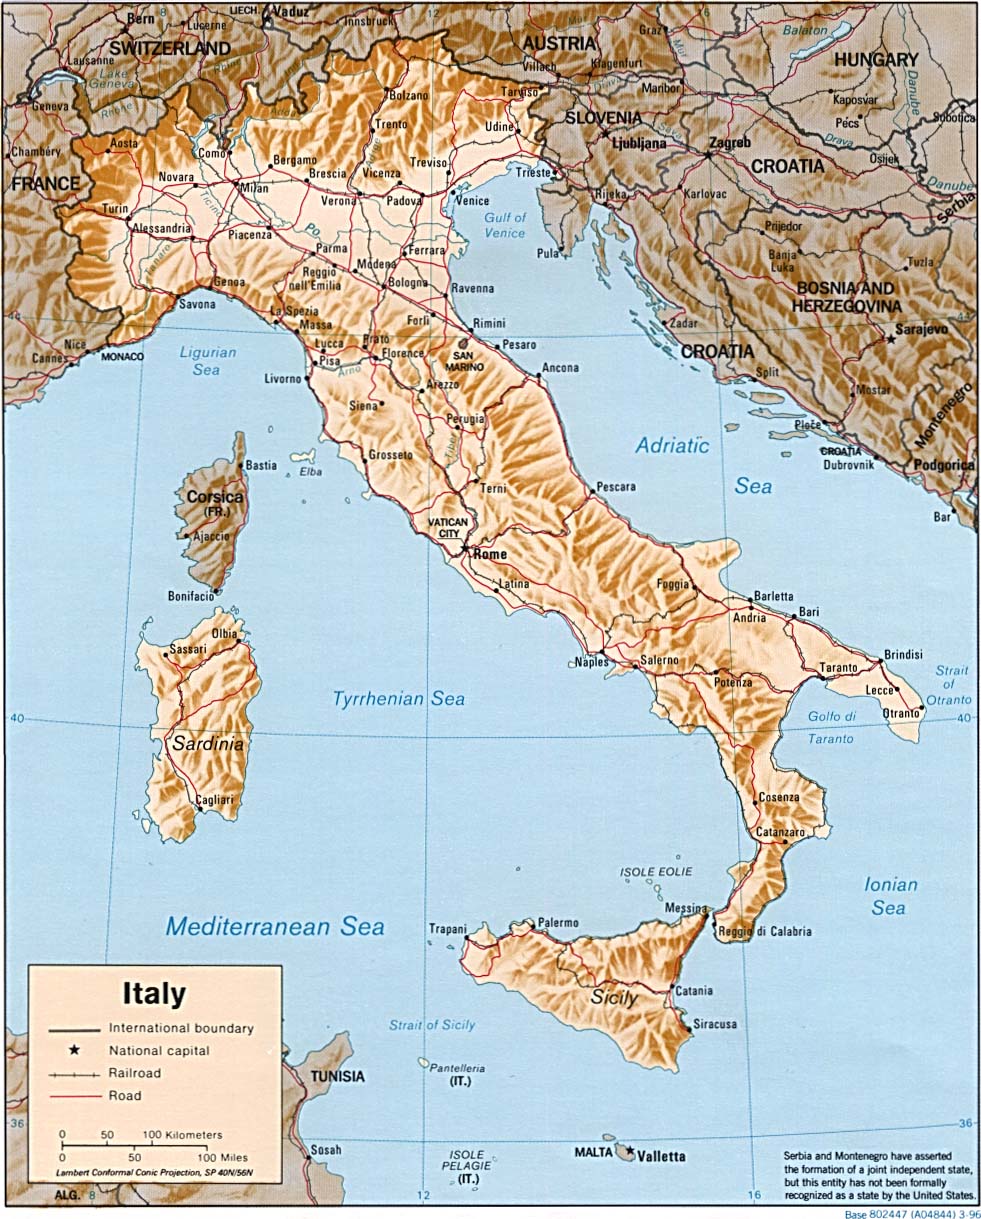 義大利地圖